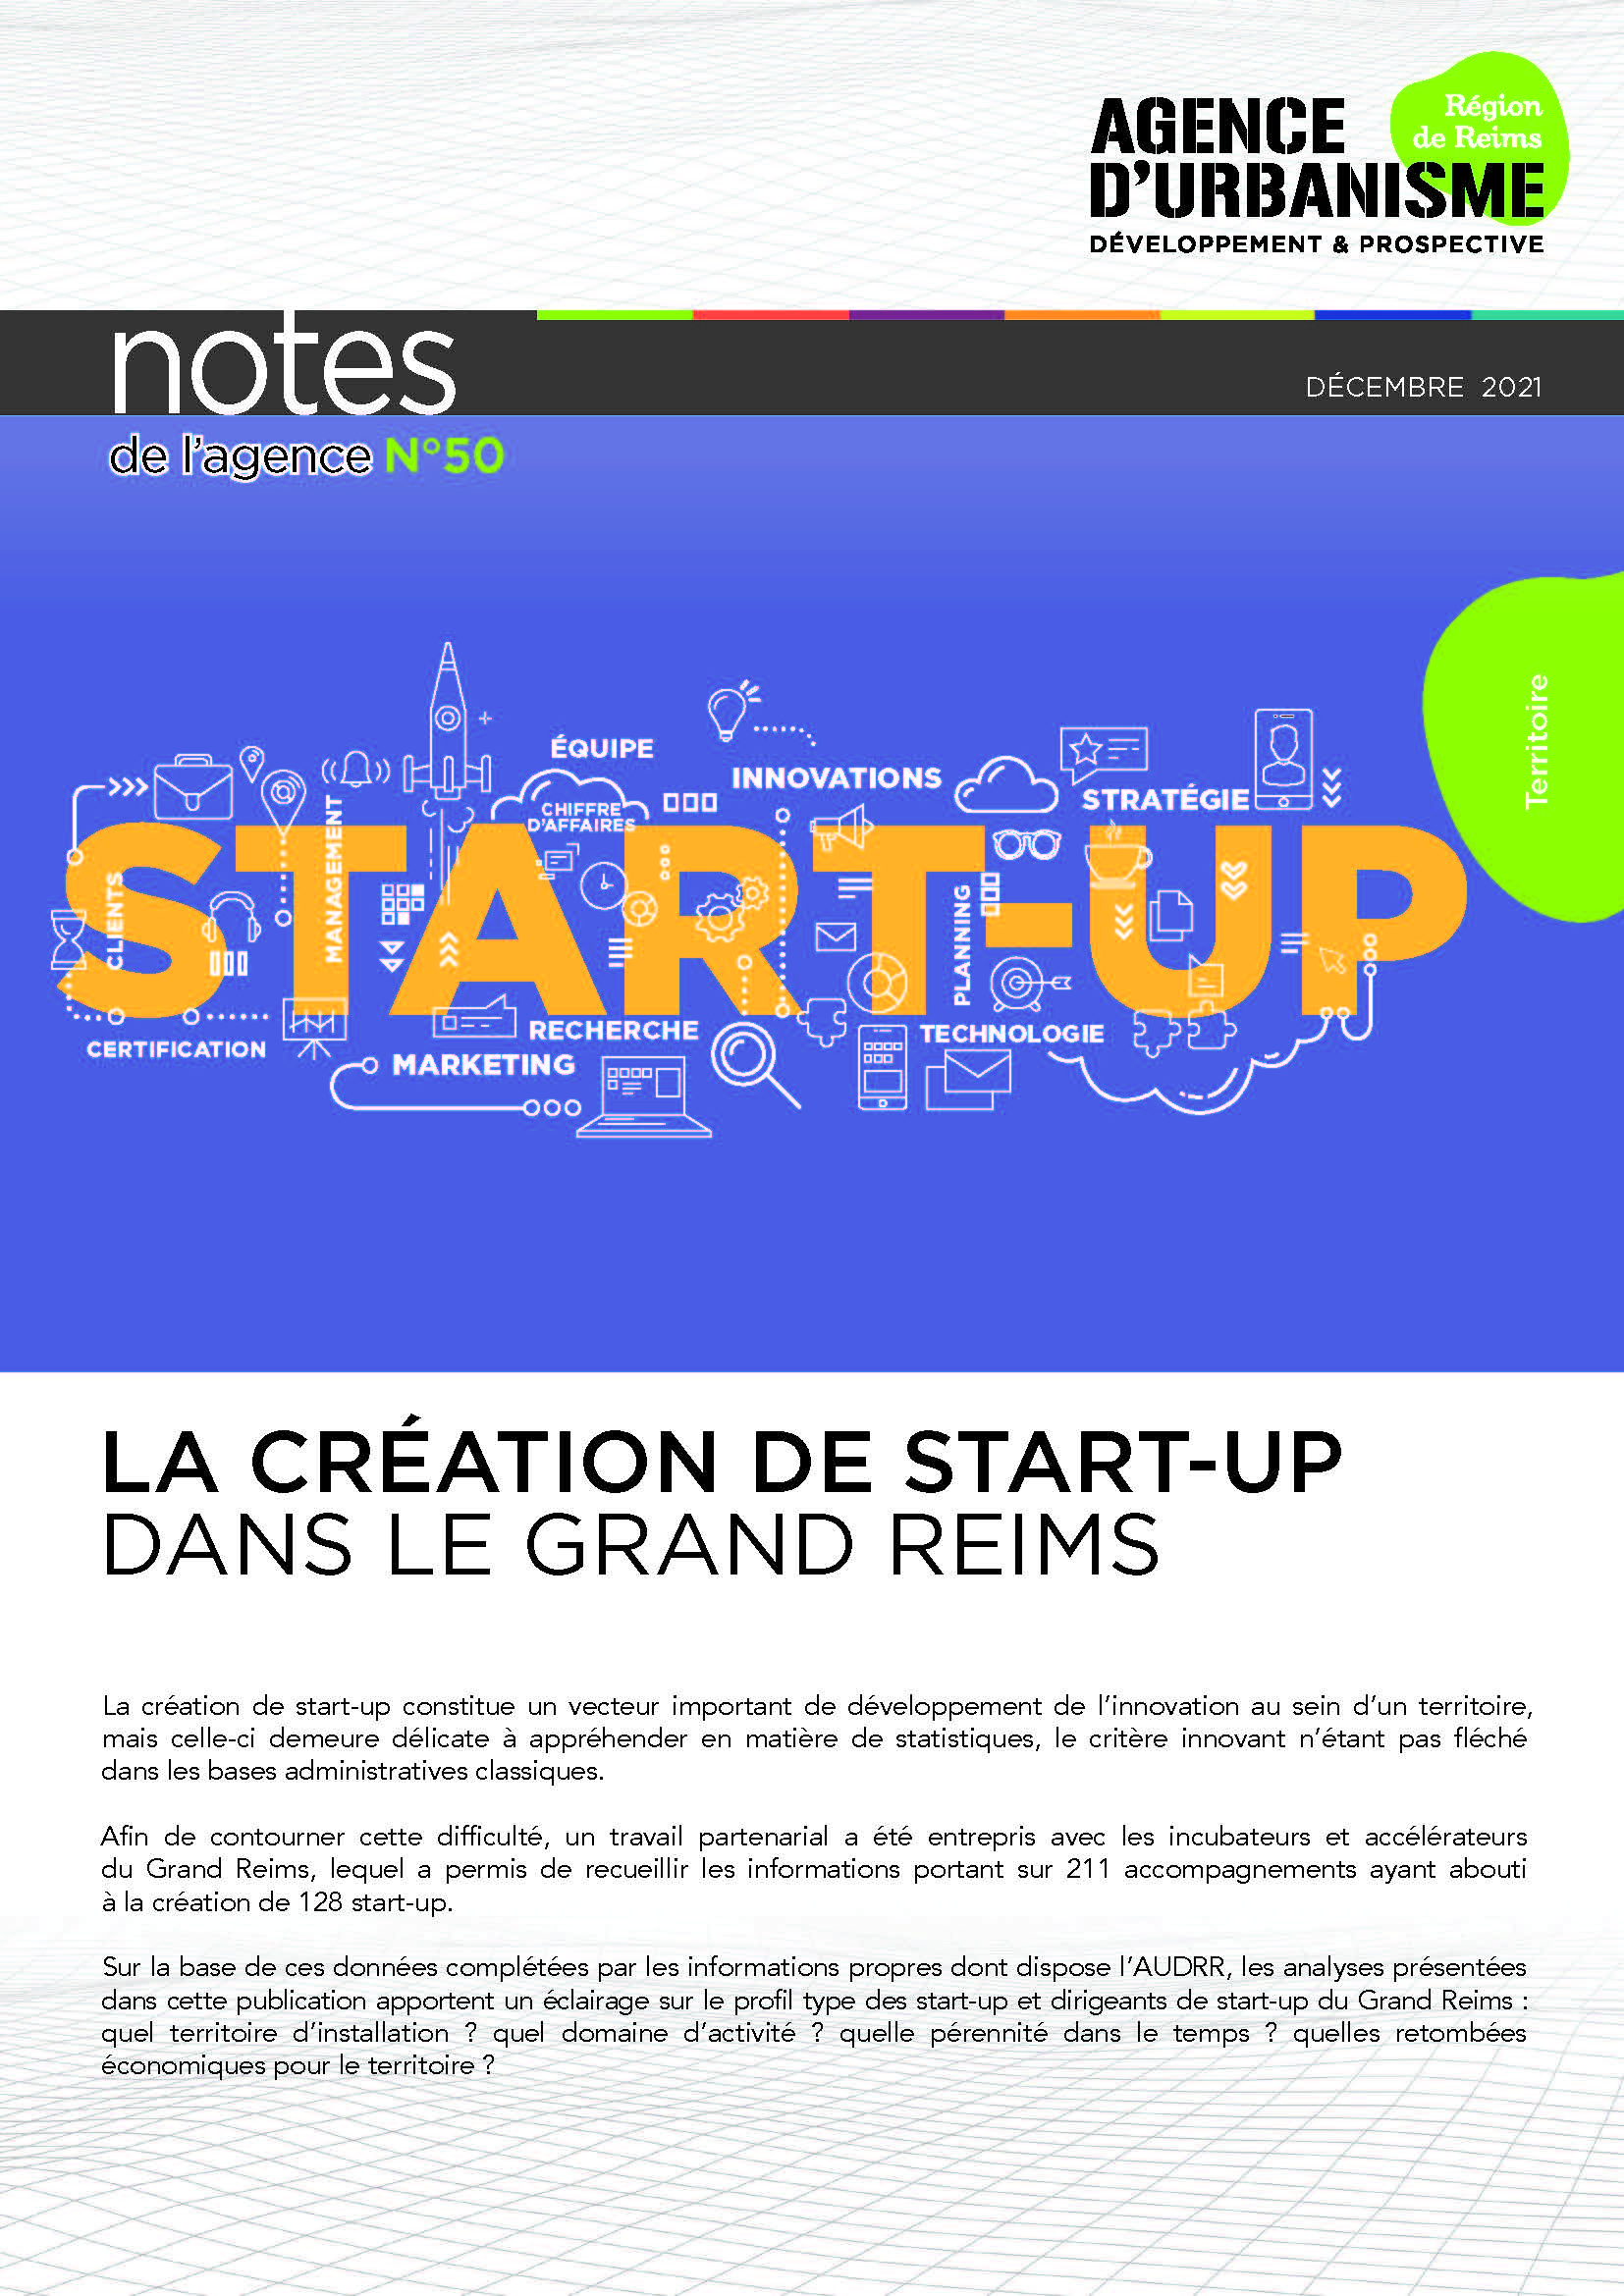 Note 50 : La Création de start-up dans le Grand Reims